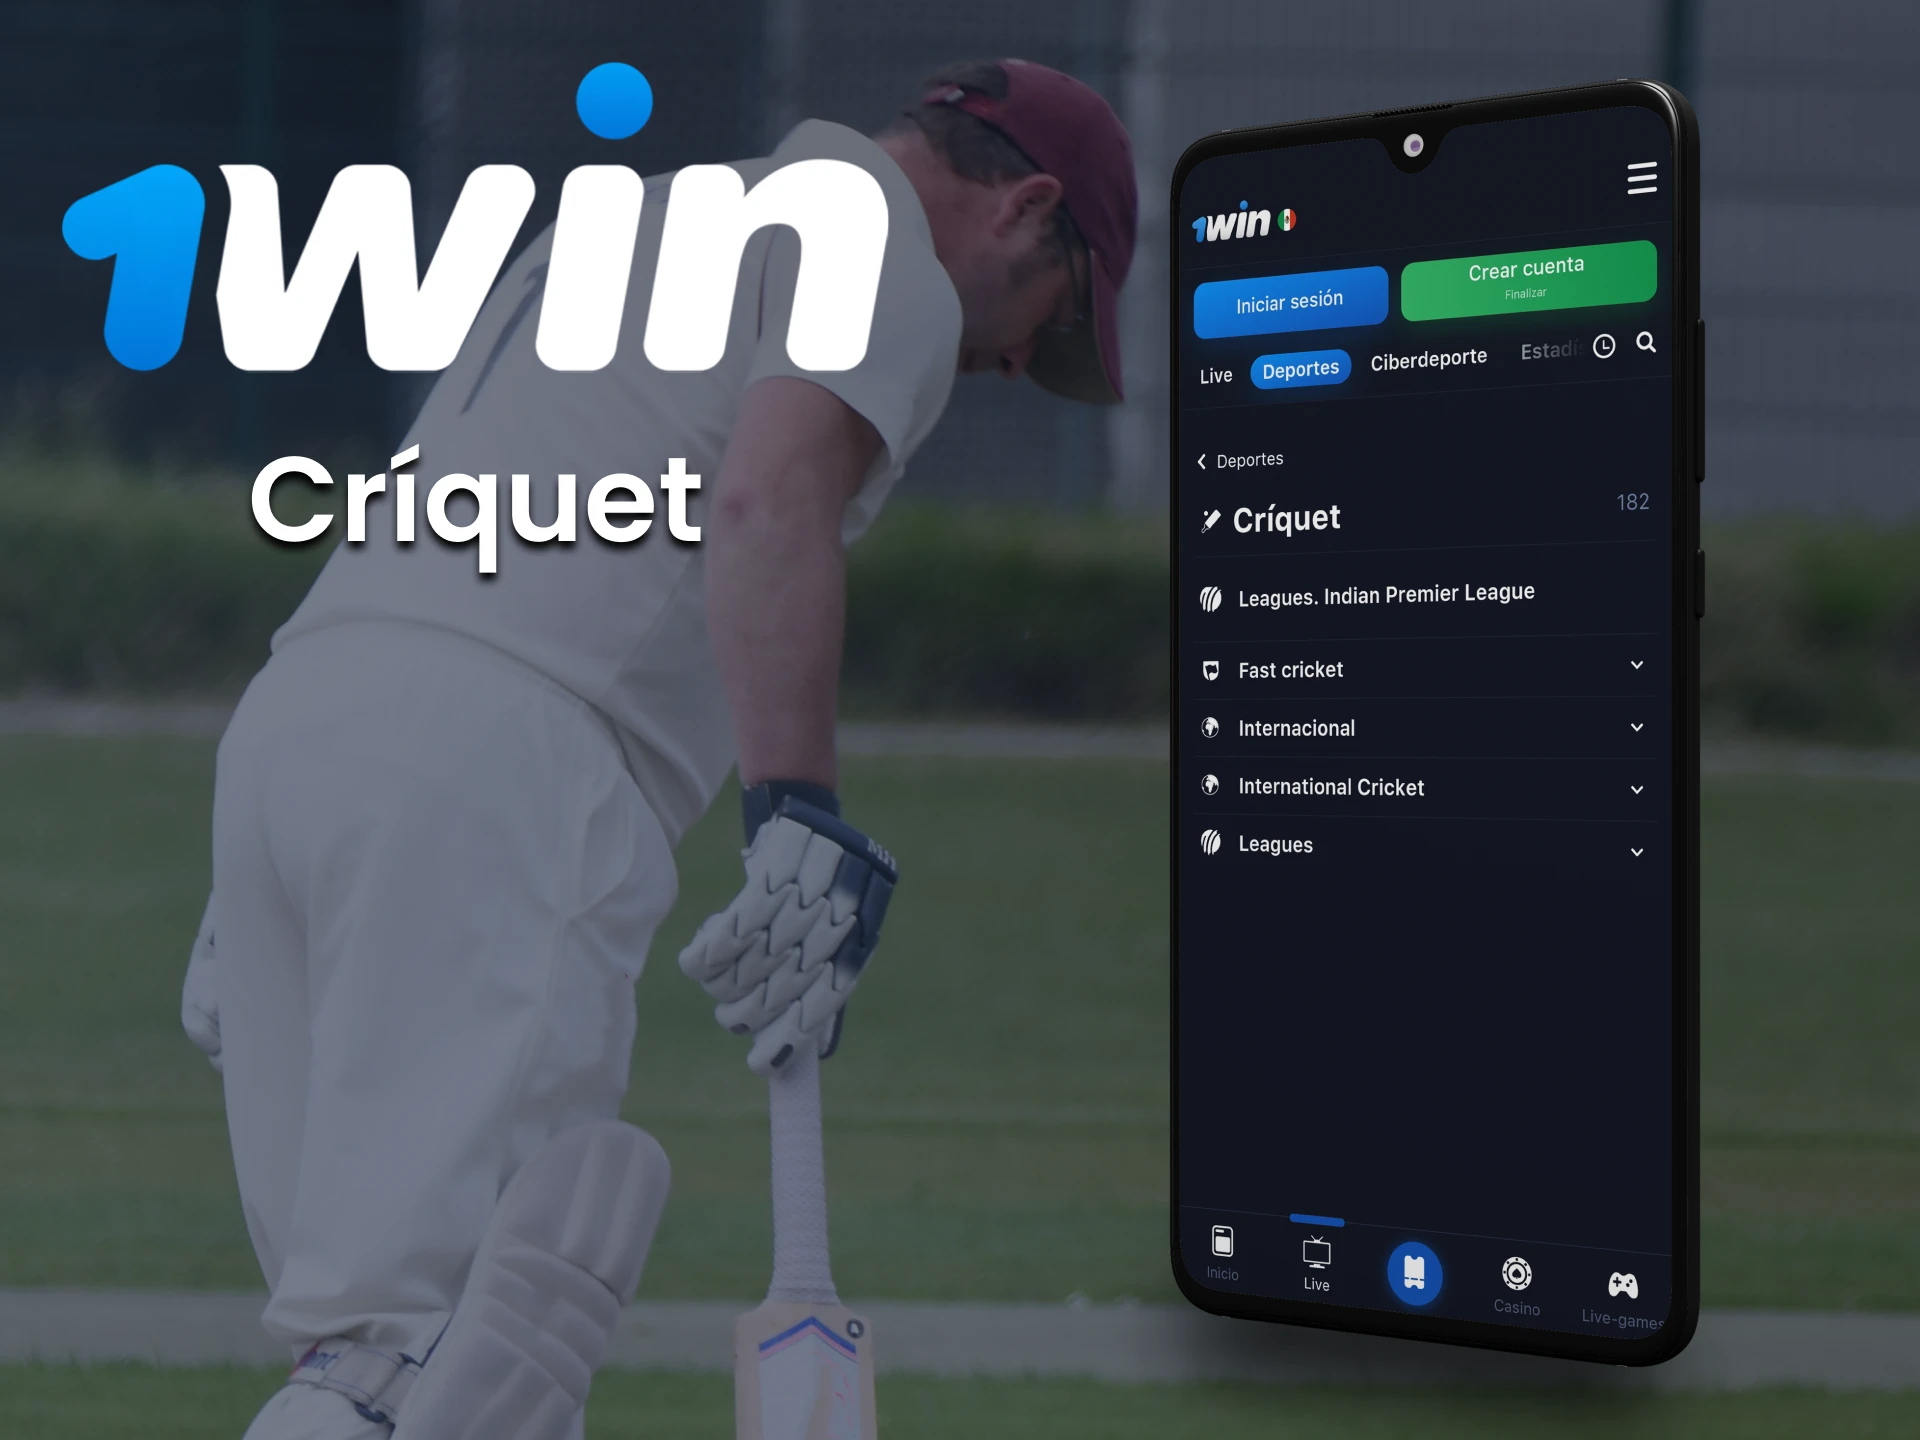 Haz tus apuestas de críquet con la 1win app en México.